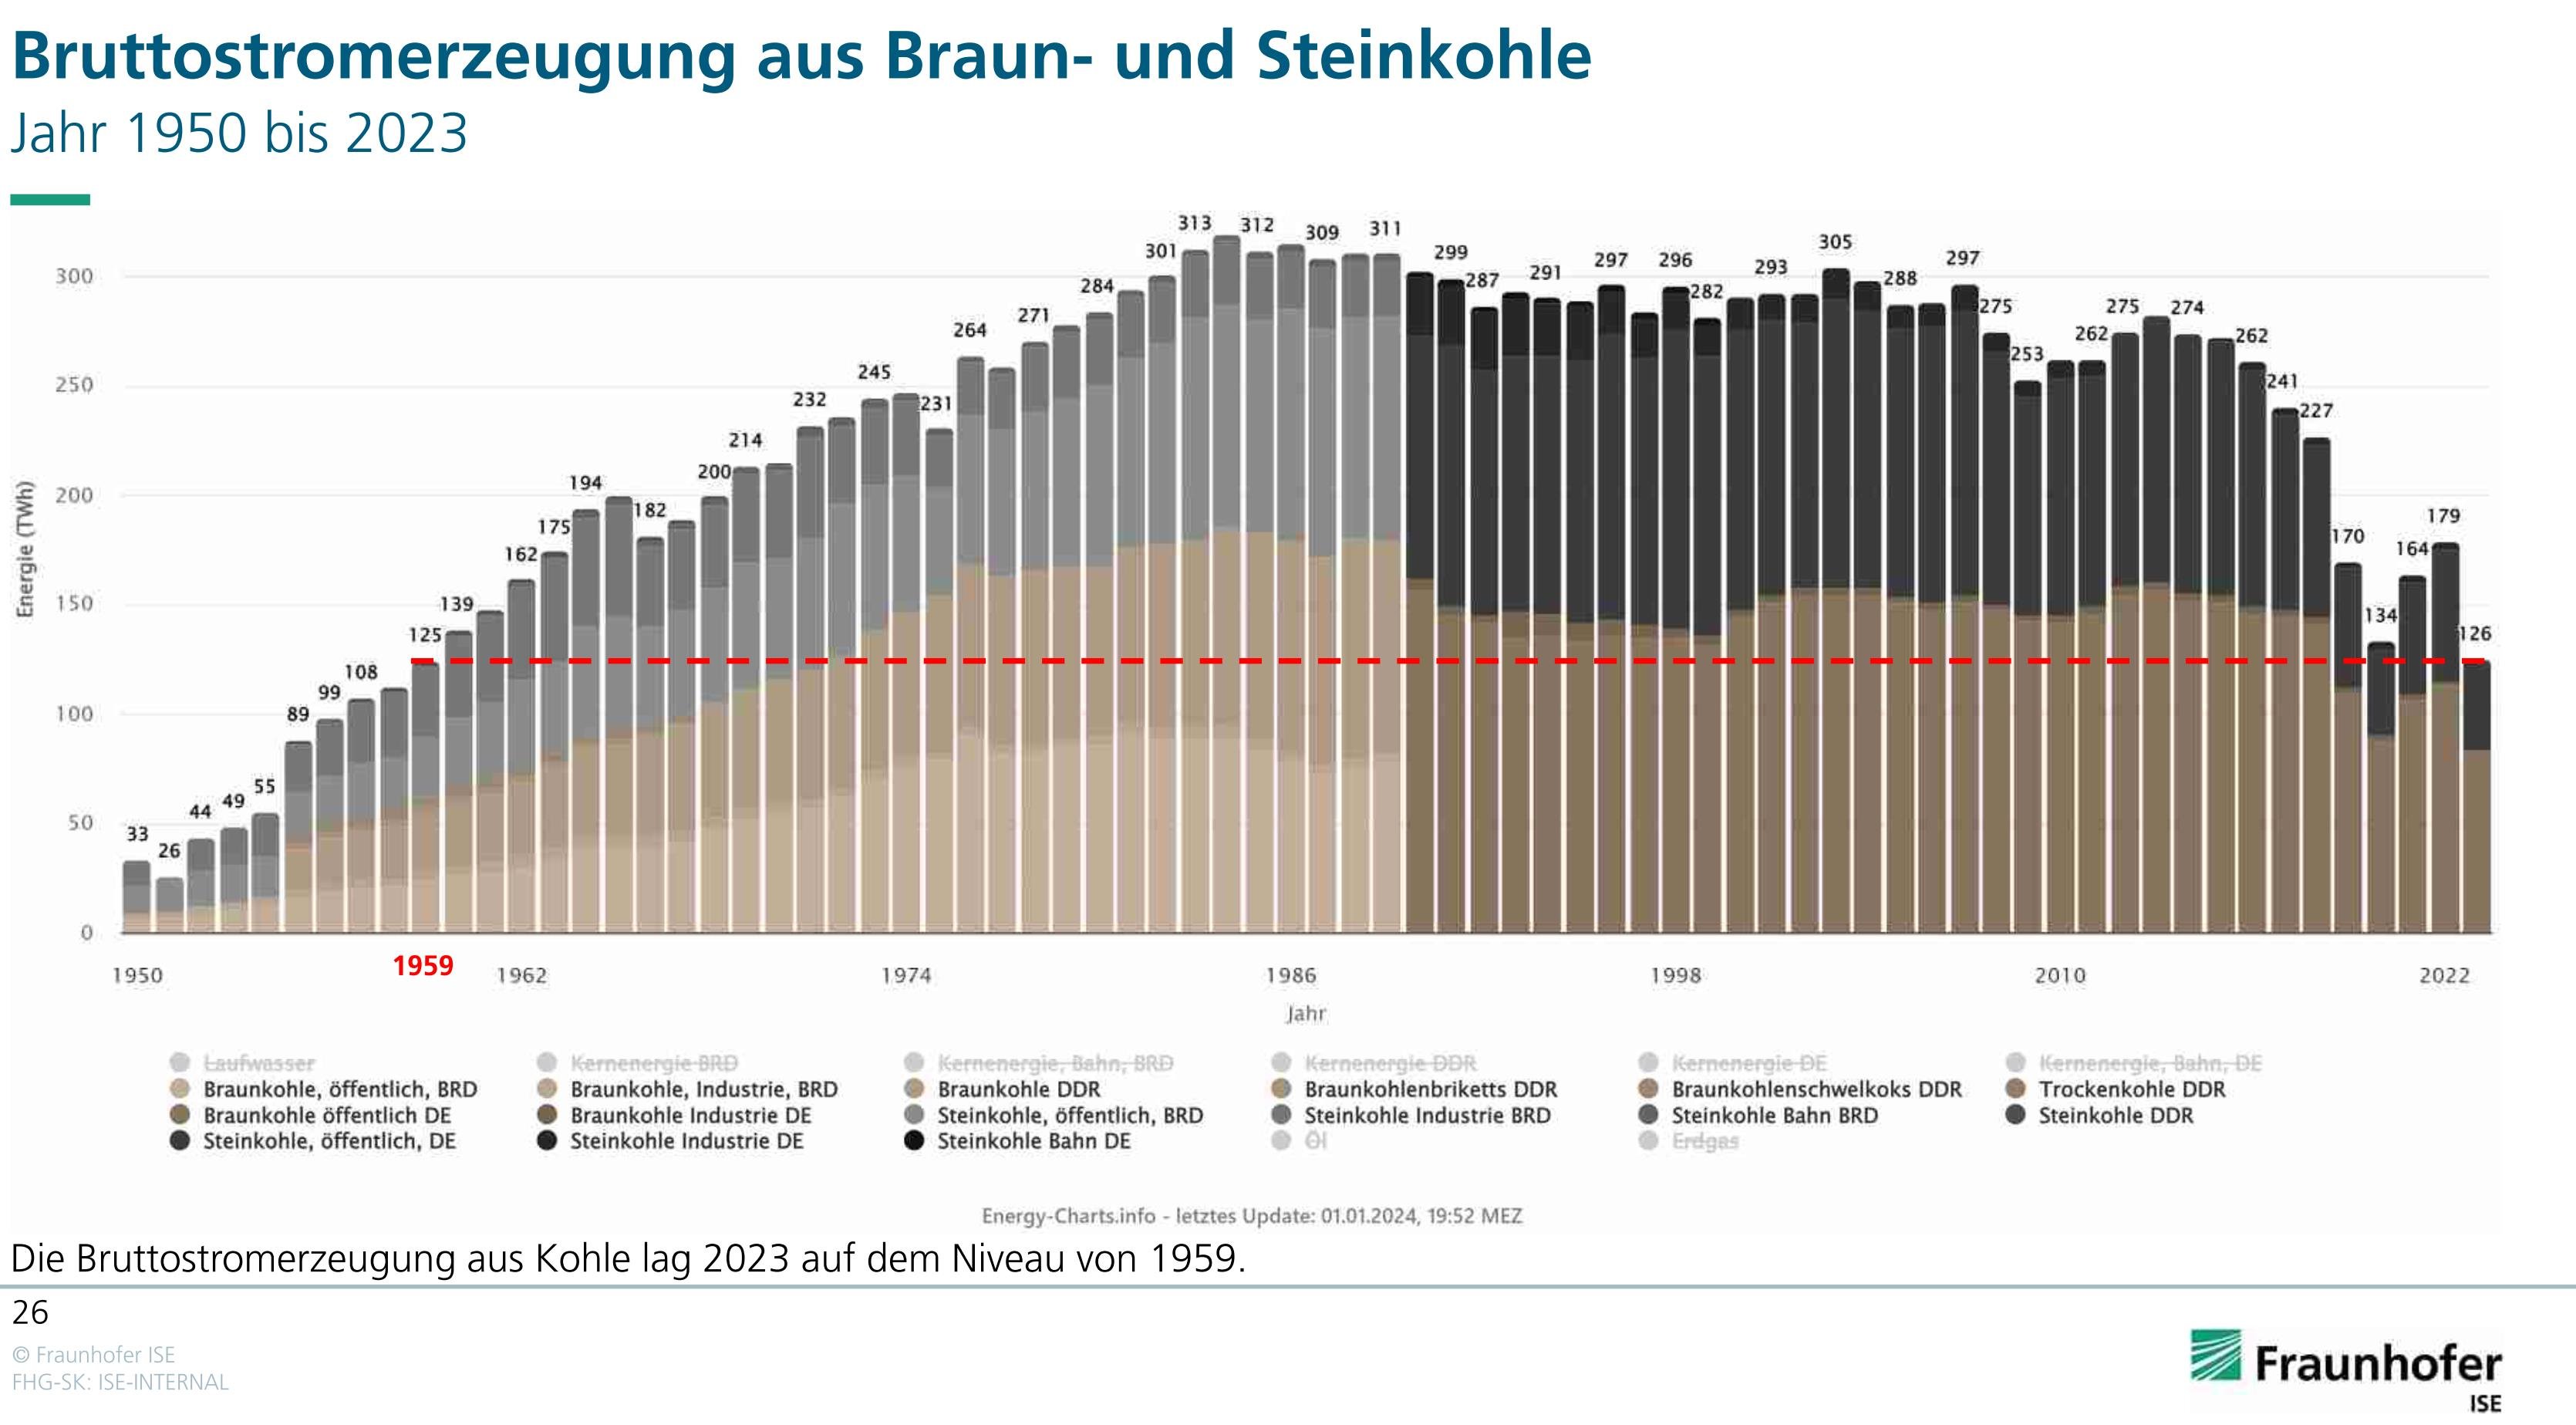 Darstellung Bruttostromerzeugung aus Braun- und Steinkohle von 1950 - 2022. Es ist ein deutlicher Rückgang der Bruttostromerzeugung seit 2018 zu erkennen.